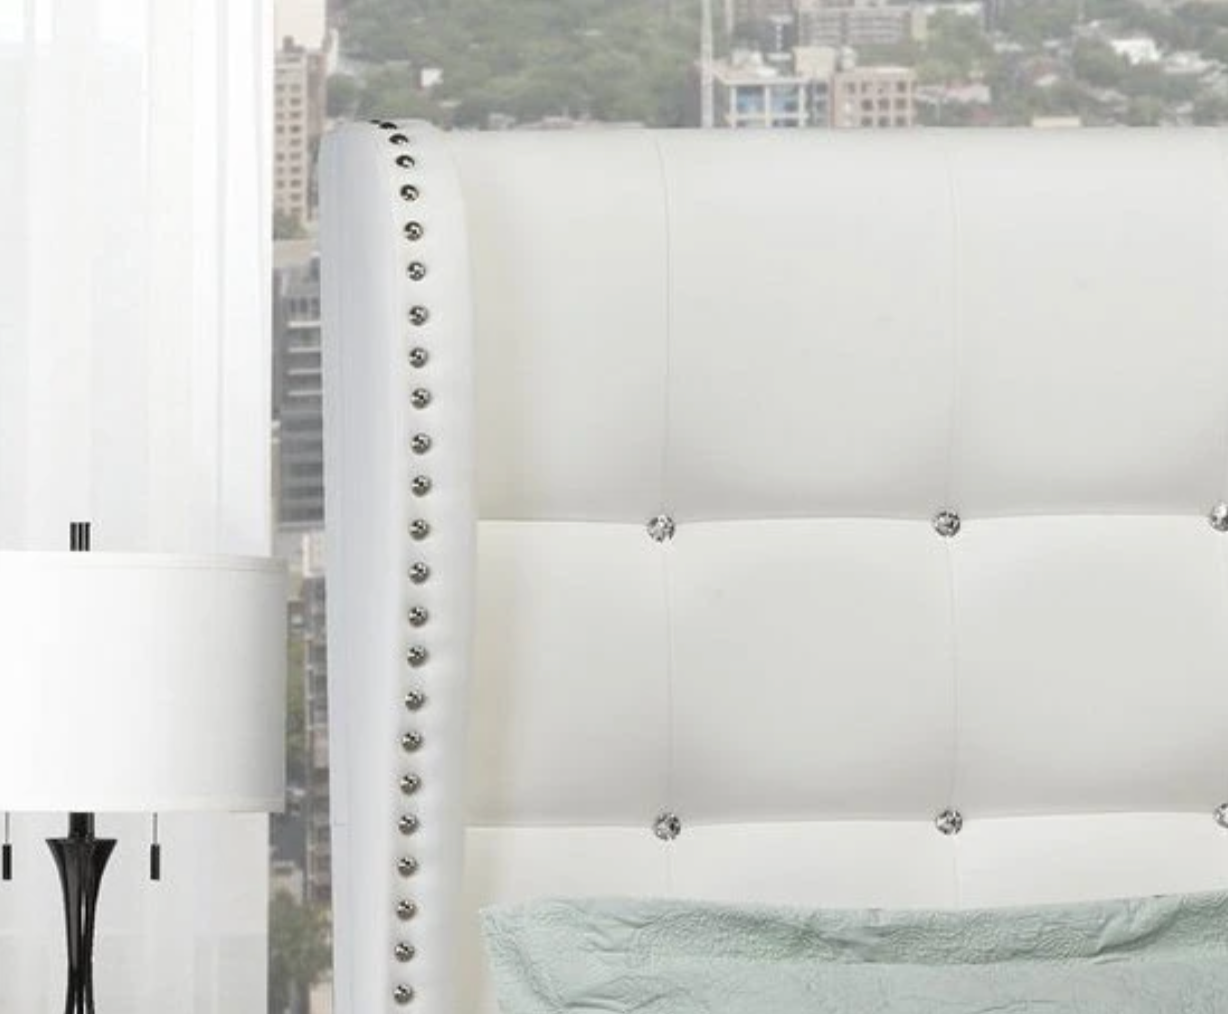 Walden Platform Bed - White Leatherette - Canadian Furniture